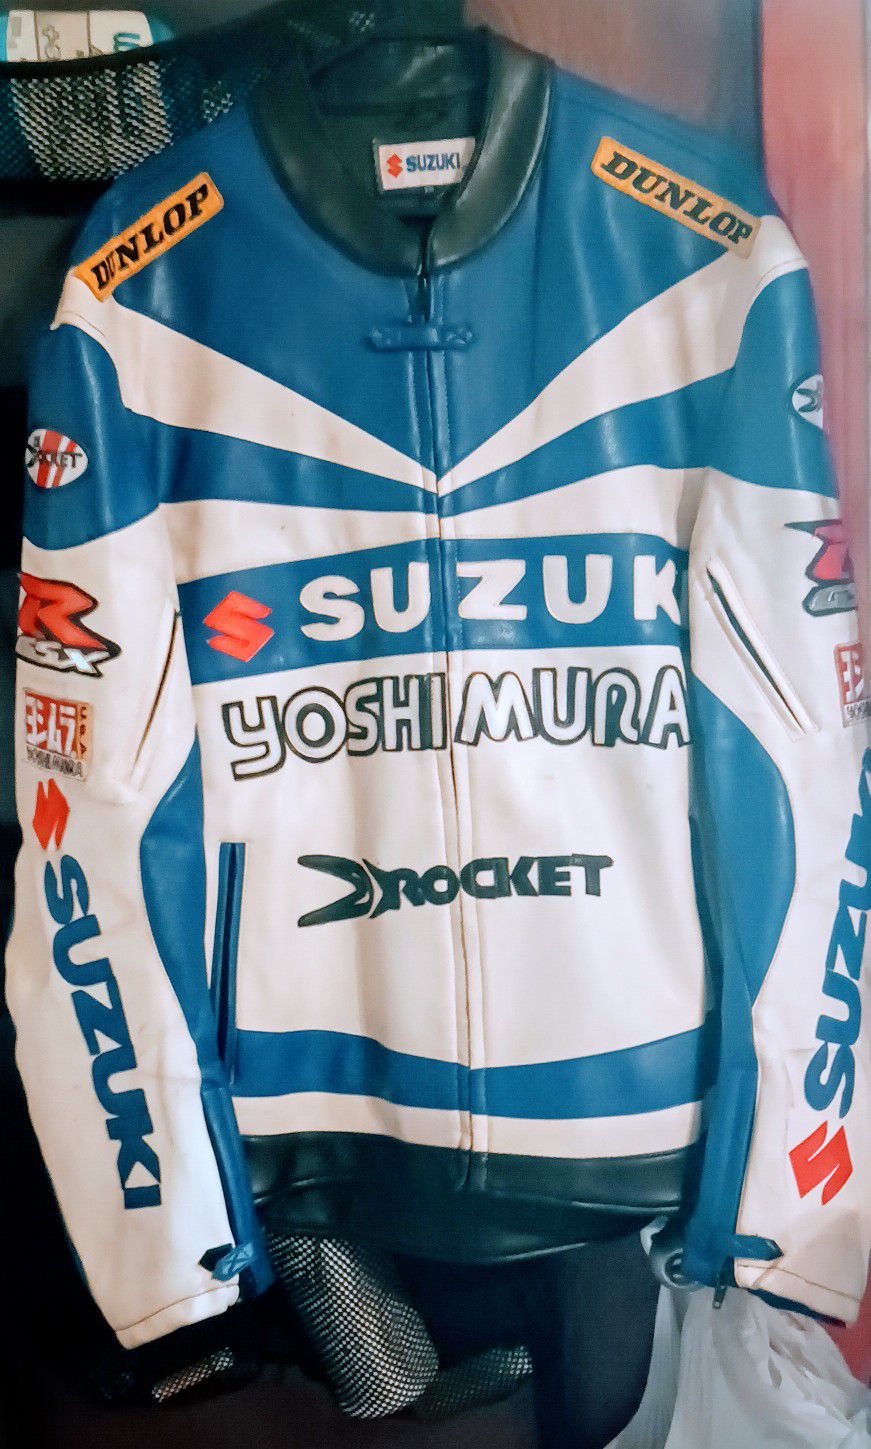 Suzuki Yoshimura Jacket! 